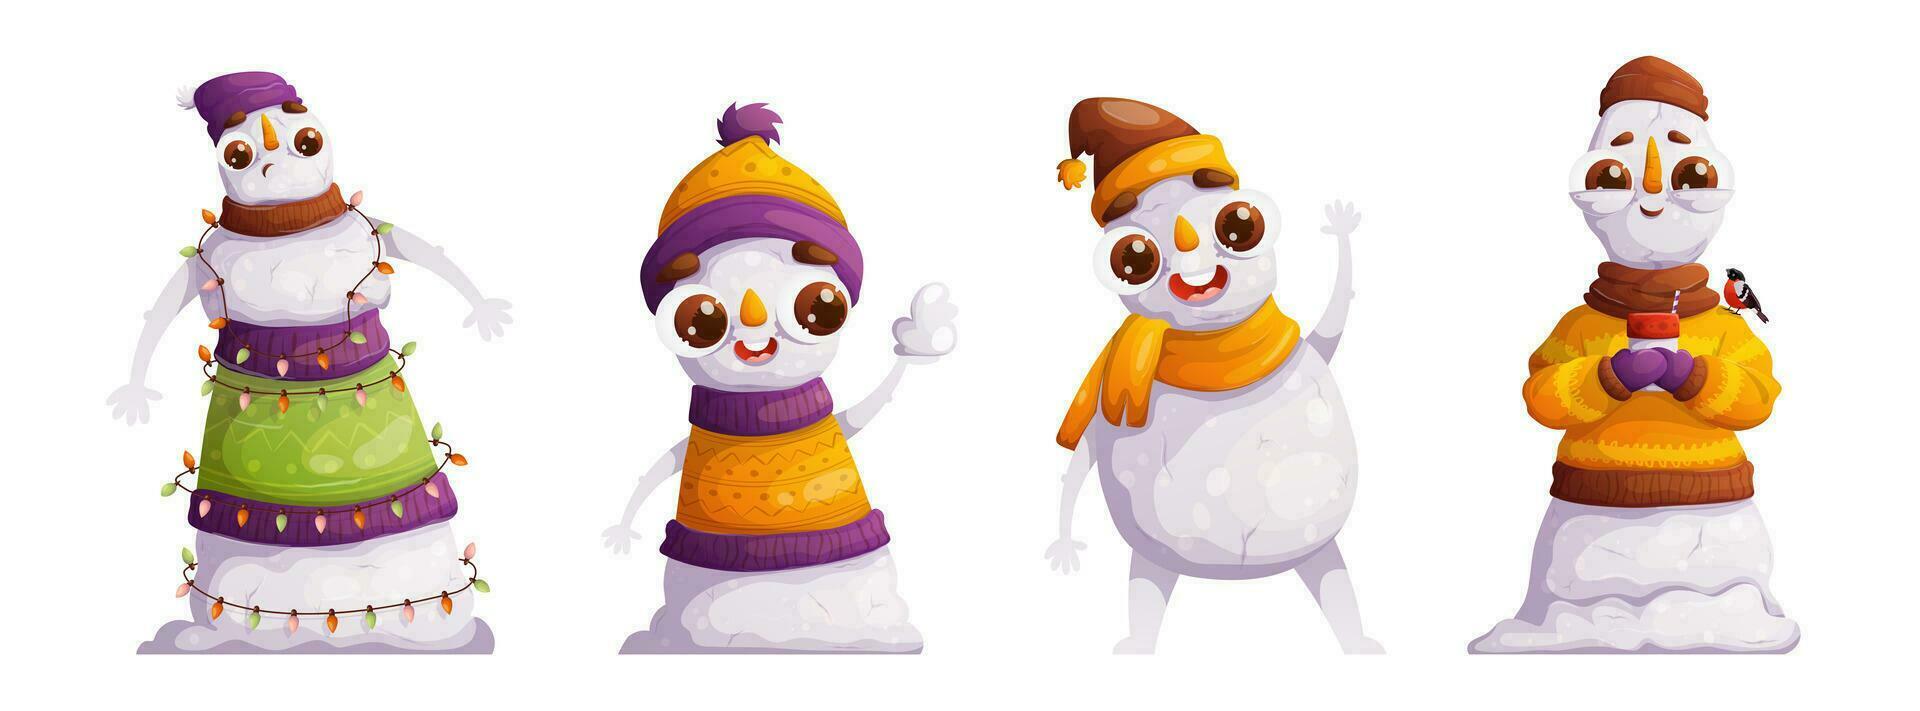 reeks van vier schattig tekenfilm sneeuwmannen. emotioneel karakters, gedetailleerd sneeuwmannen in winter warm hoeden en gebreid truien, tonen verrassing, vreugde, groet en kalm. vector